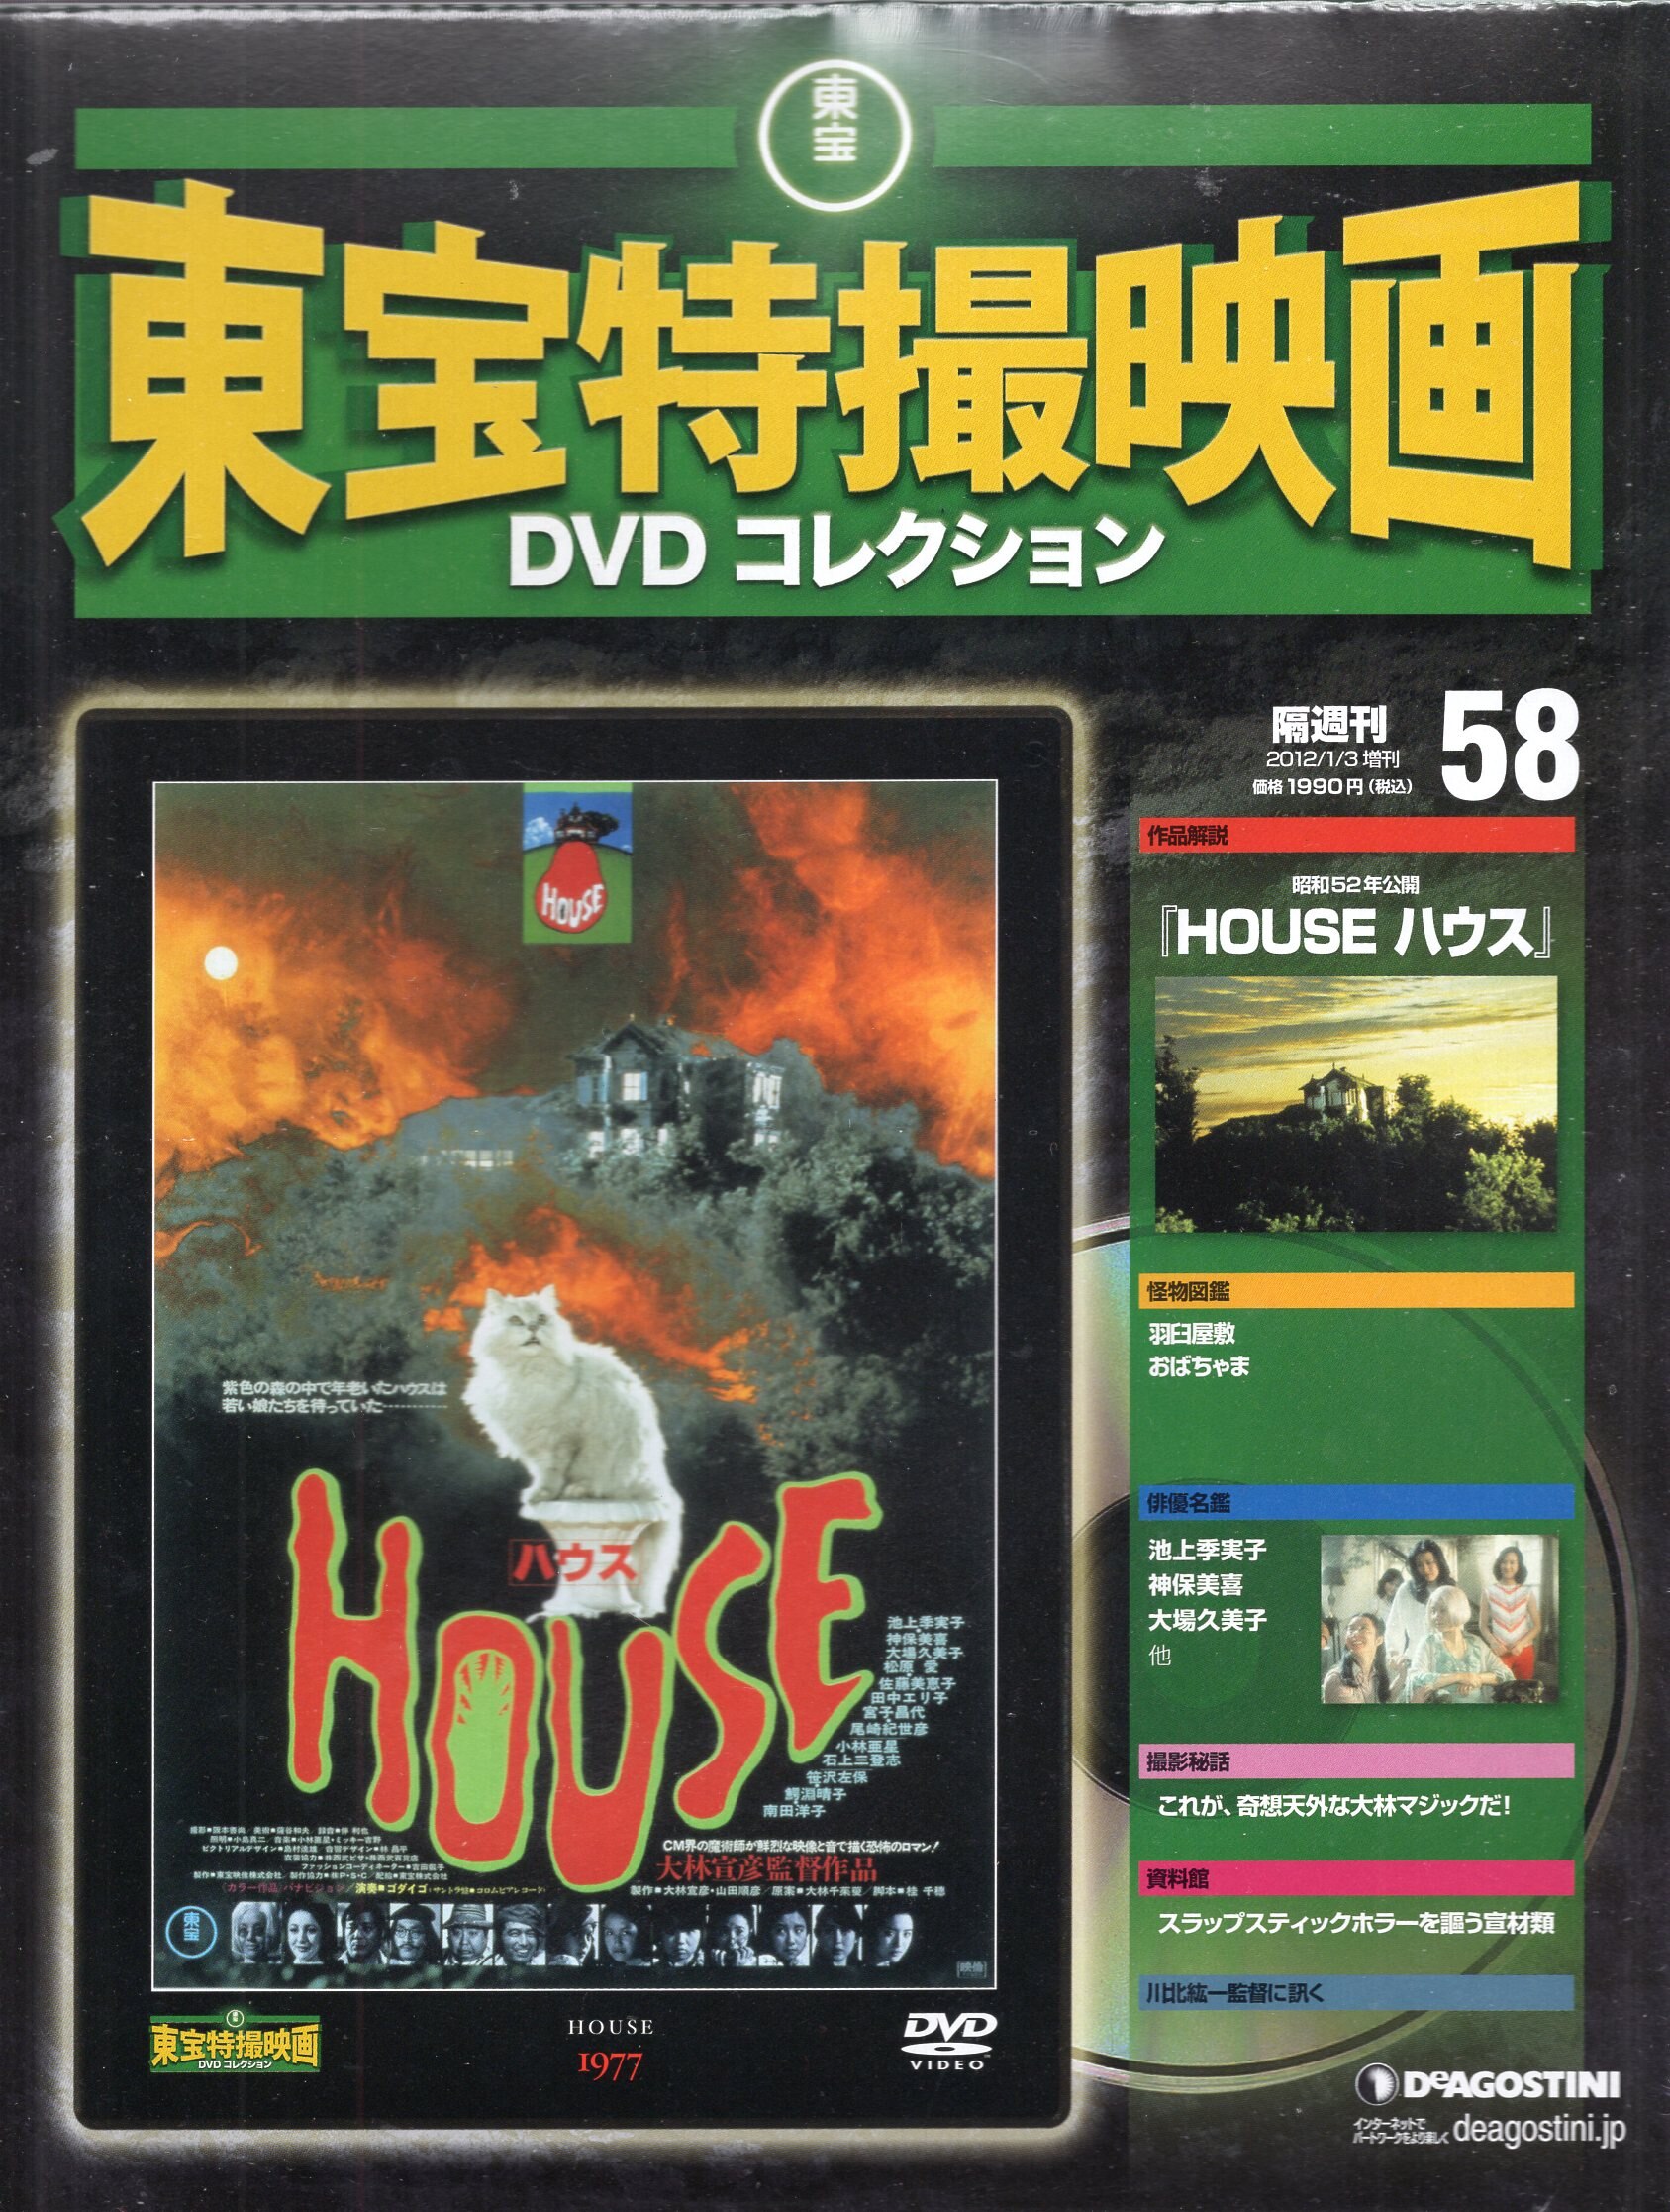 東宝特撮映画DVDコレクション 58 HOUSE - 通販 - gofukuyasan.com